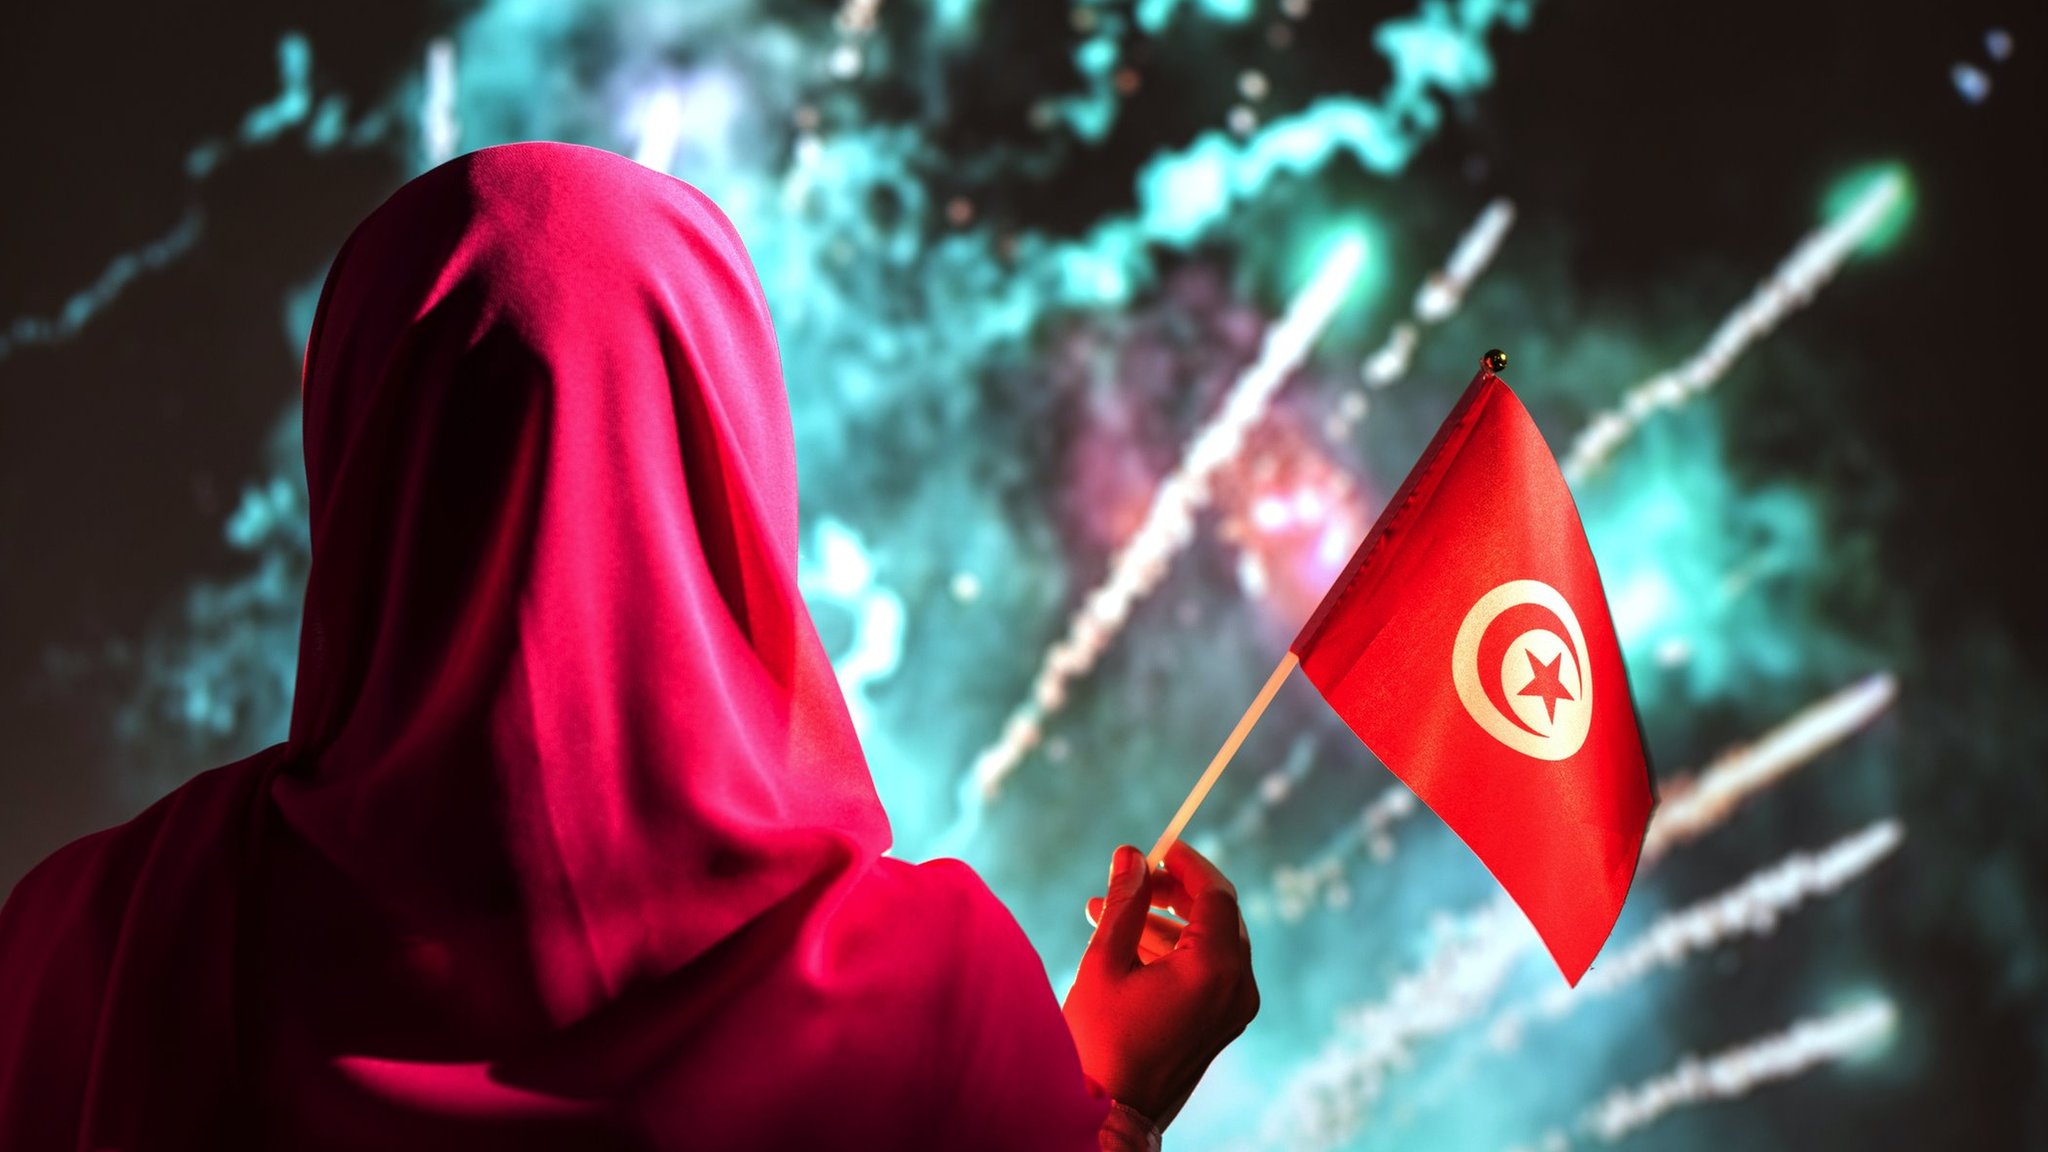 أثارت تصريحات العفاس جدلا واسعا في الأوساط الحقوقية والسياسية في تونس